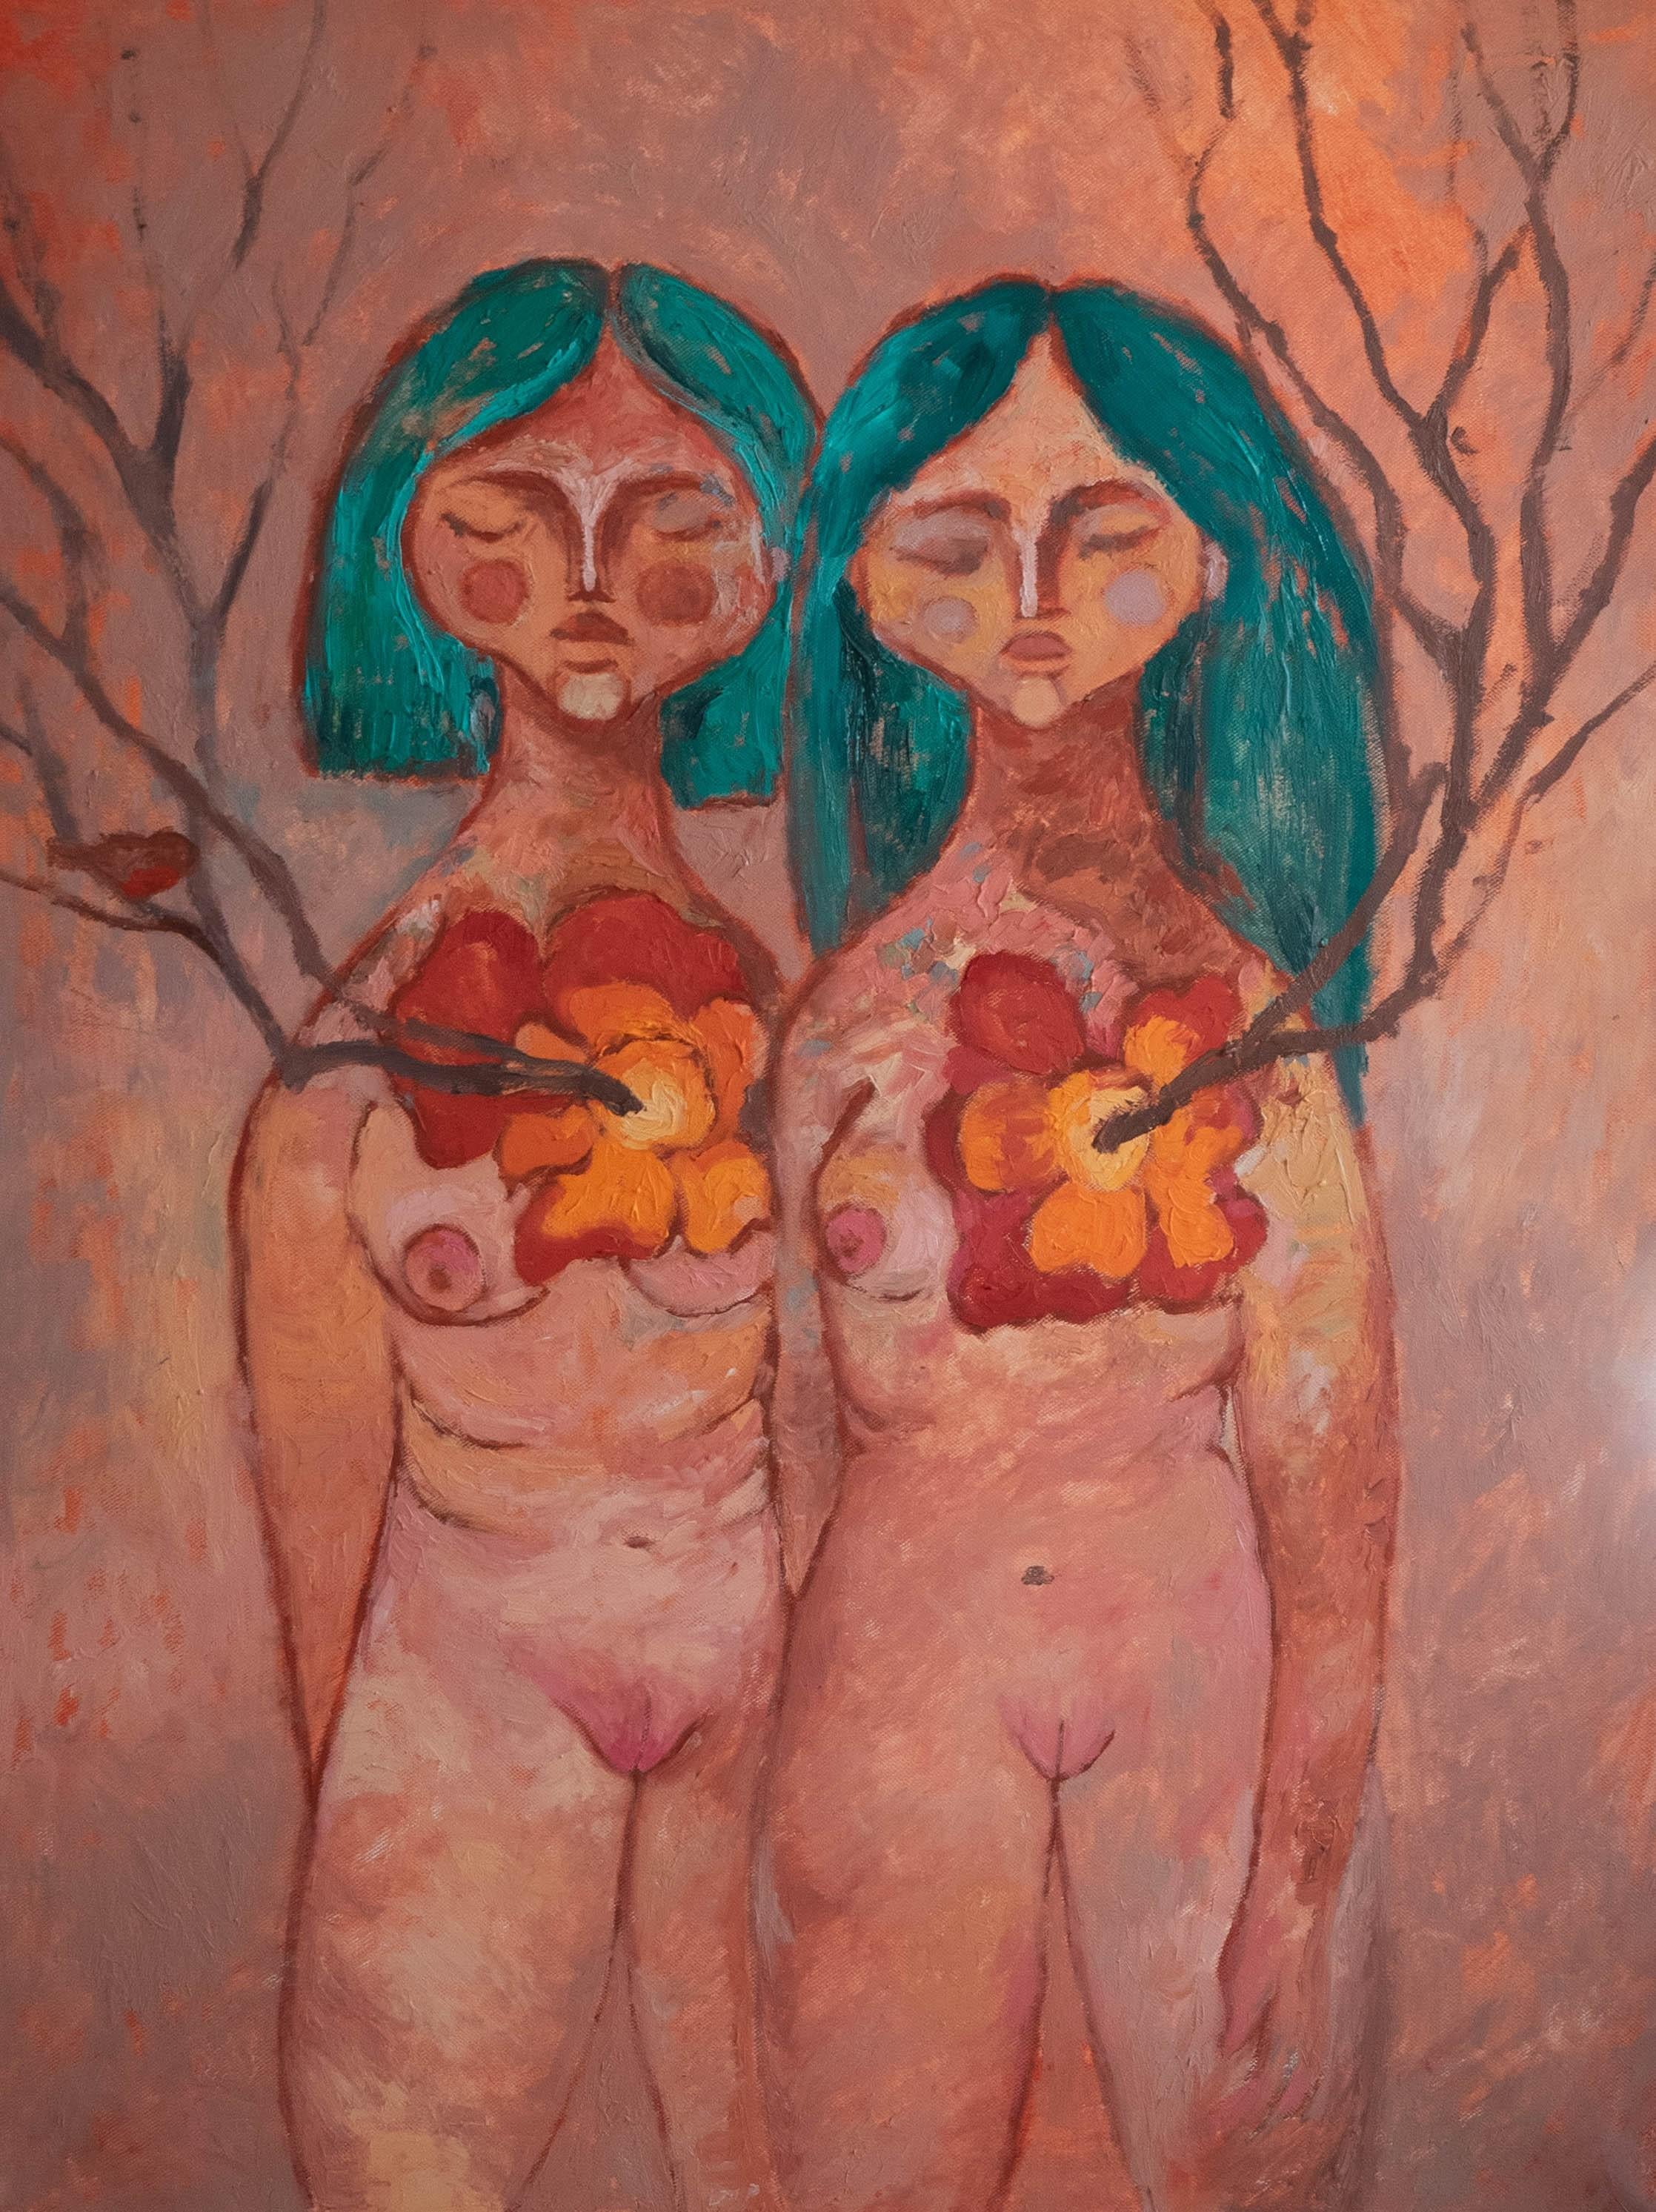 Dasha Pogodina Nude Painting - You rise me up